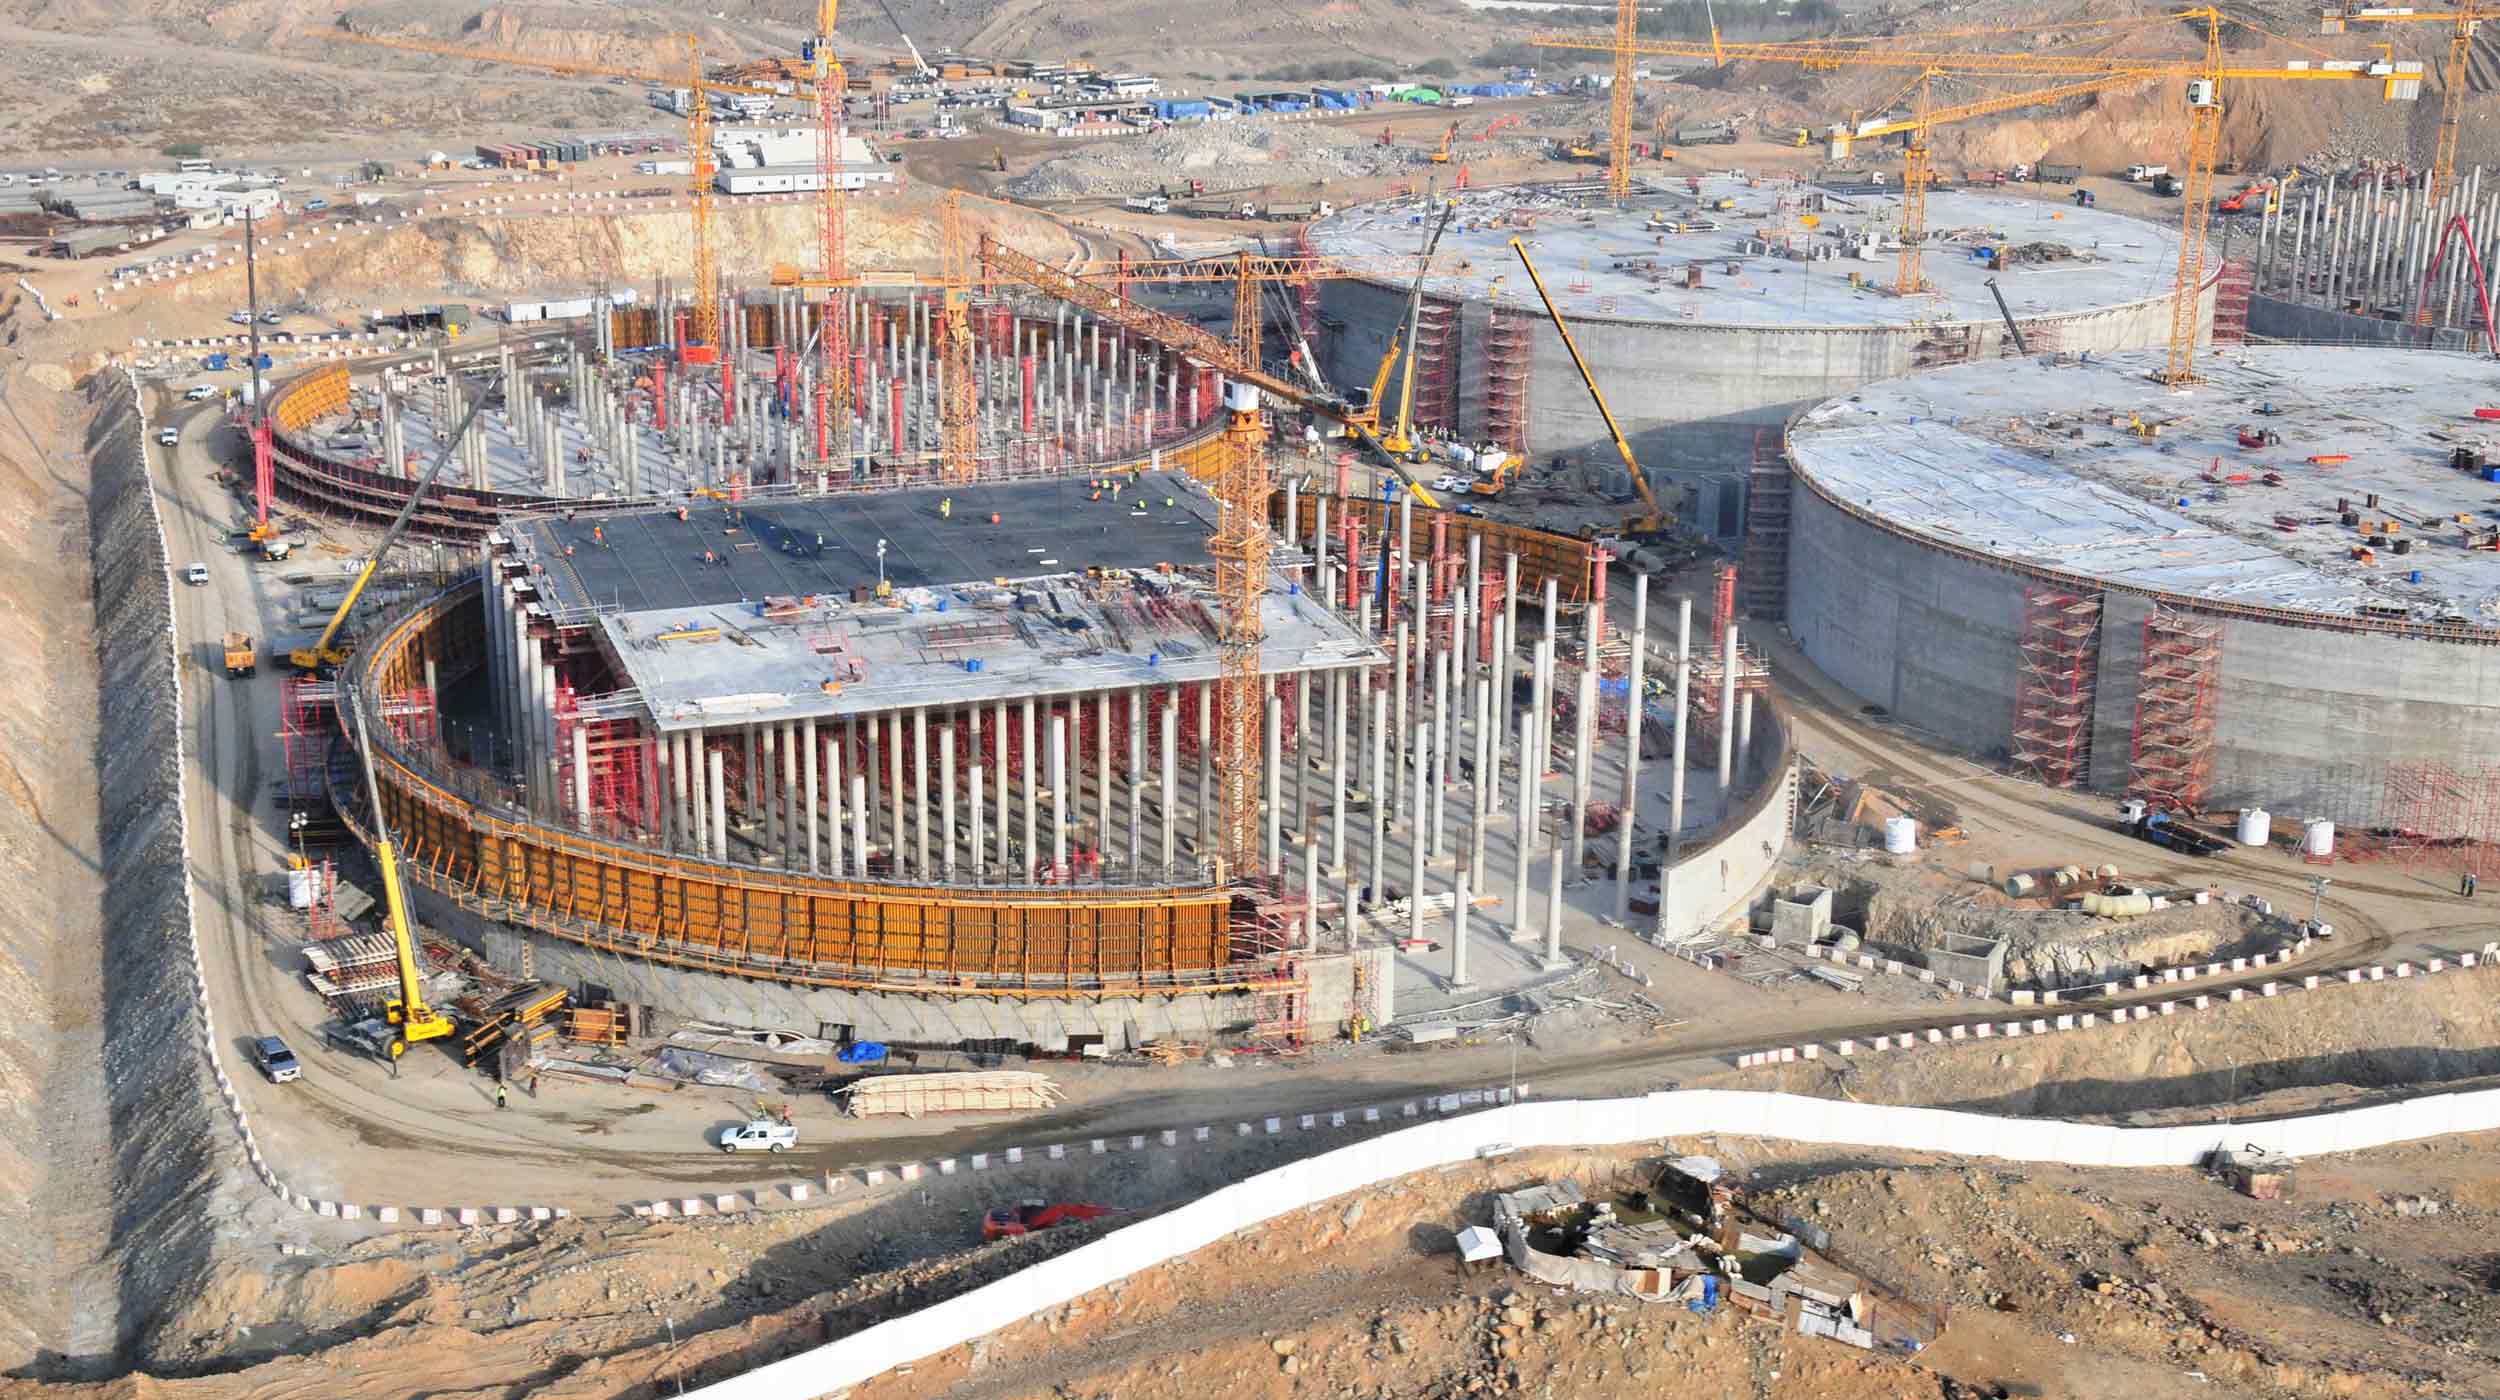 El proyecto estratégico de reserva de agua en Jeddah es el mayor de este tipo construido en Arabia Saudí hasta la fecha.